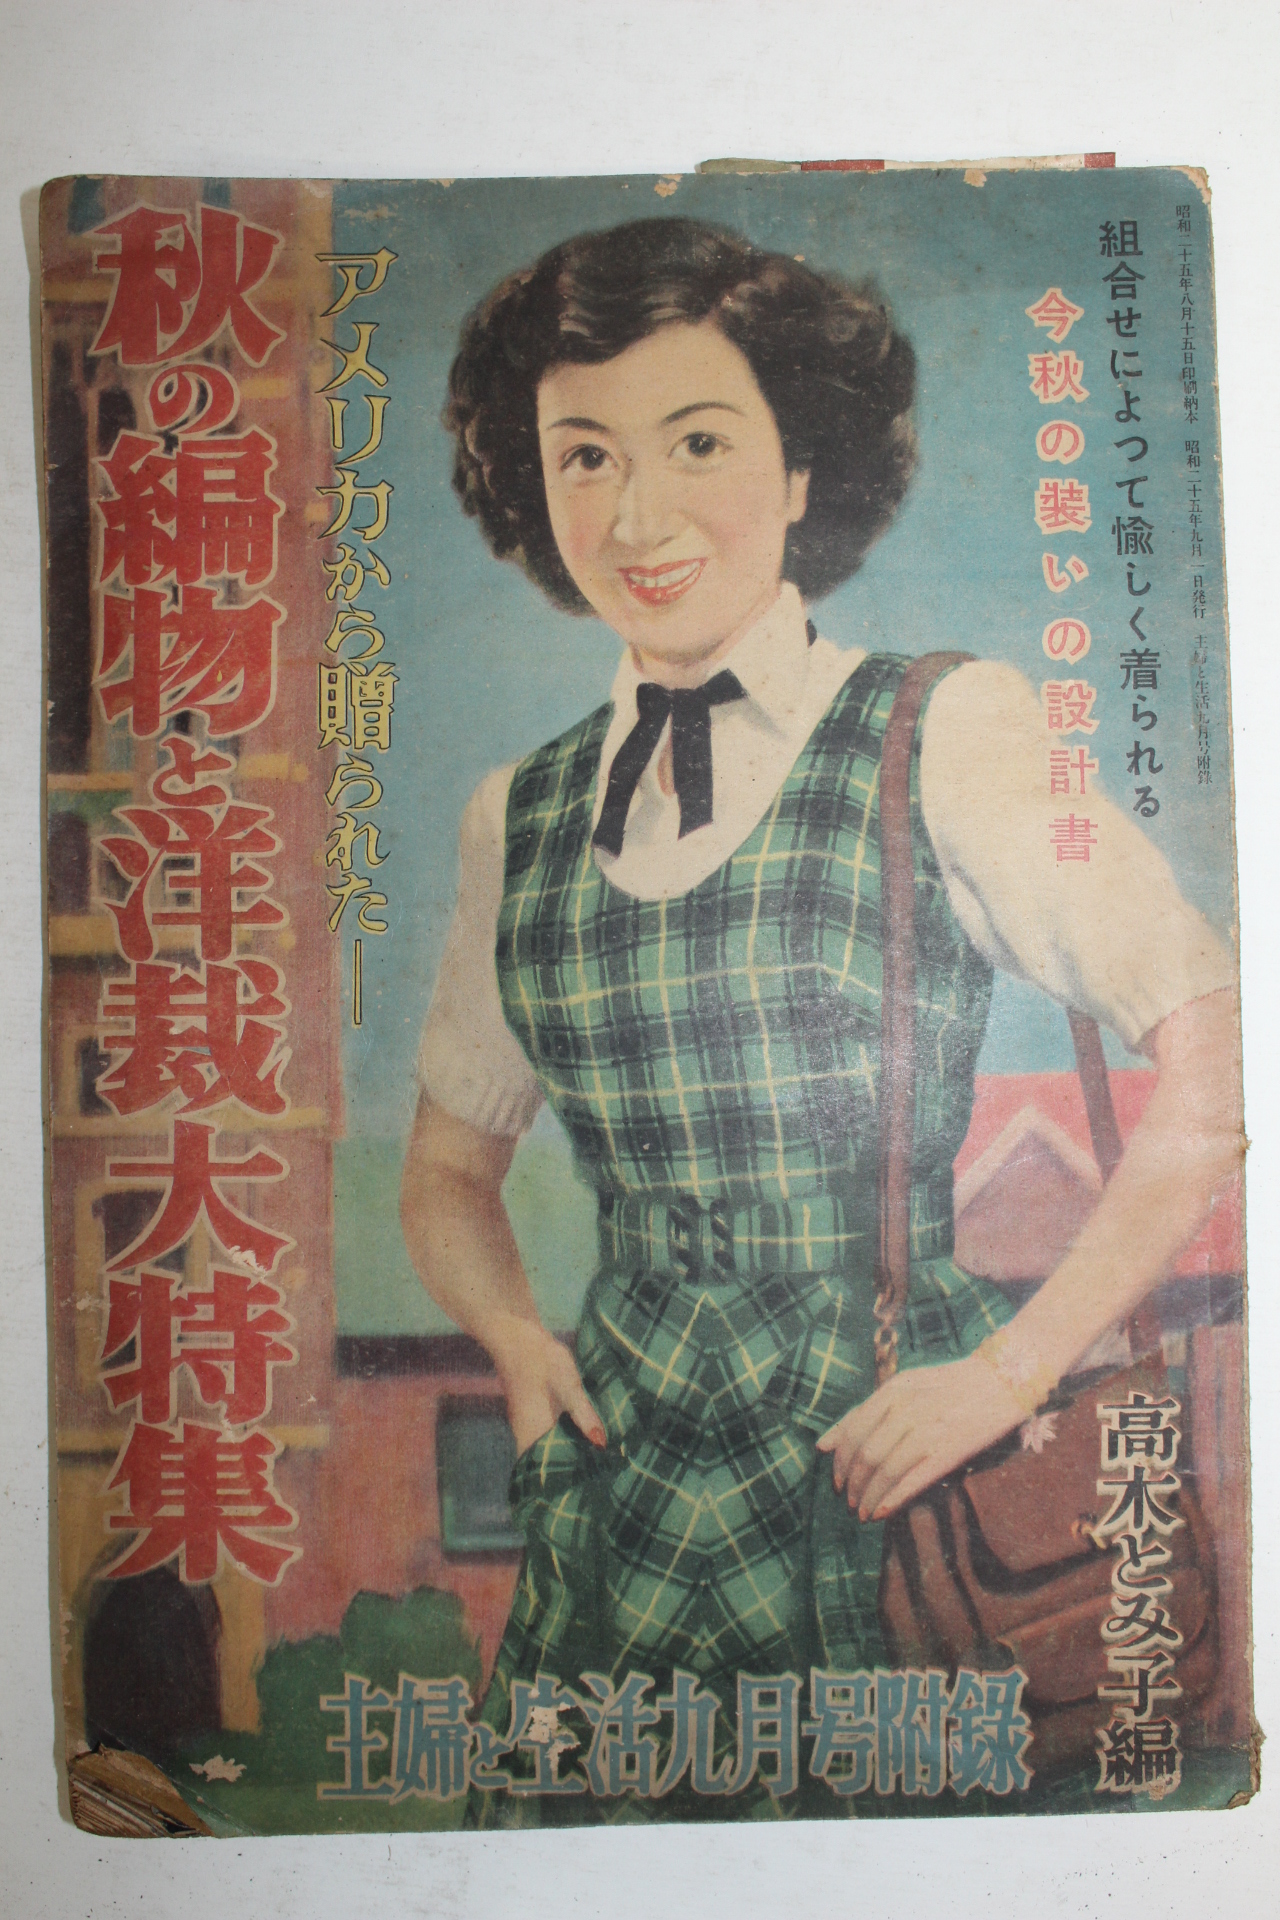 1950년(소화25년) 일본간행 잡지